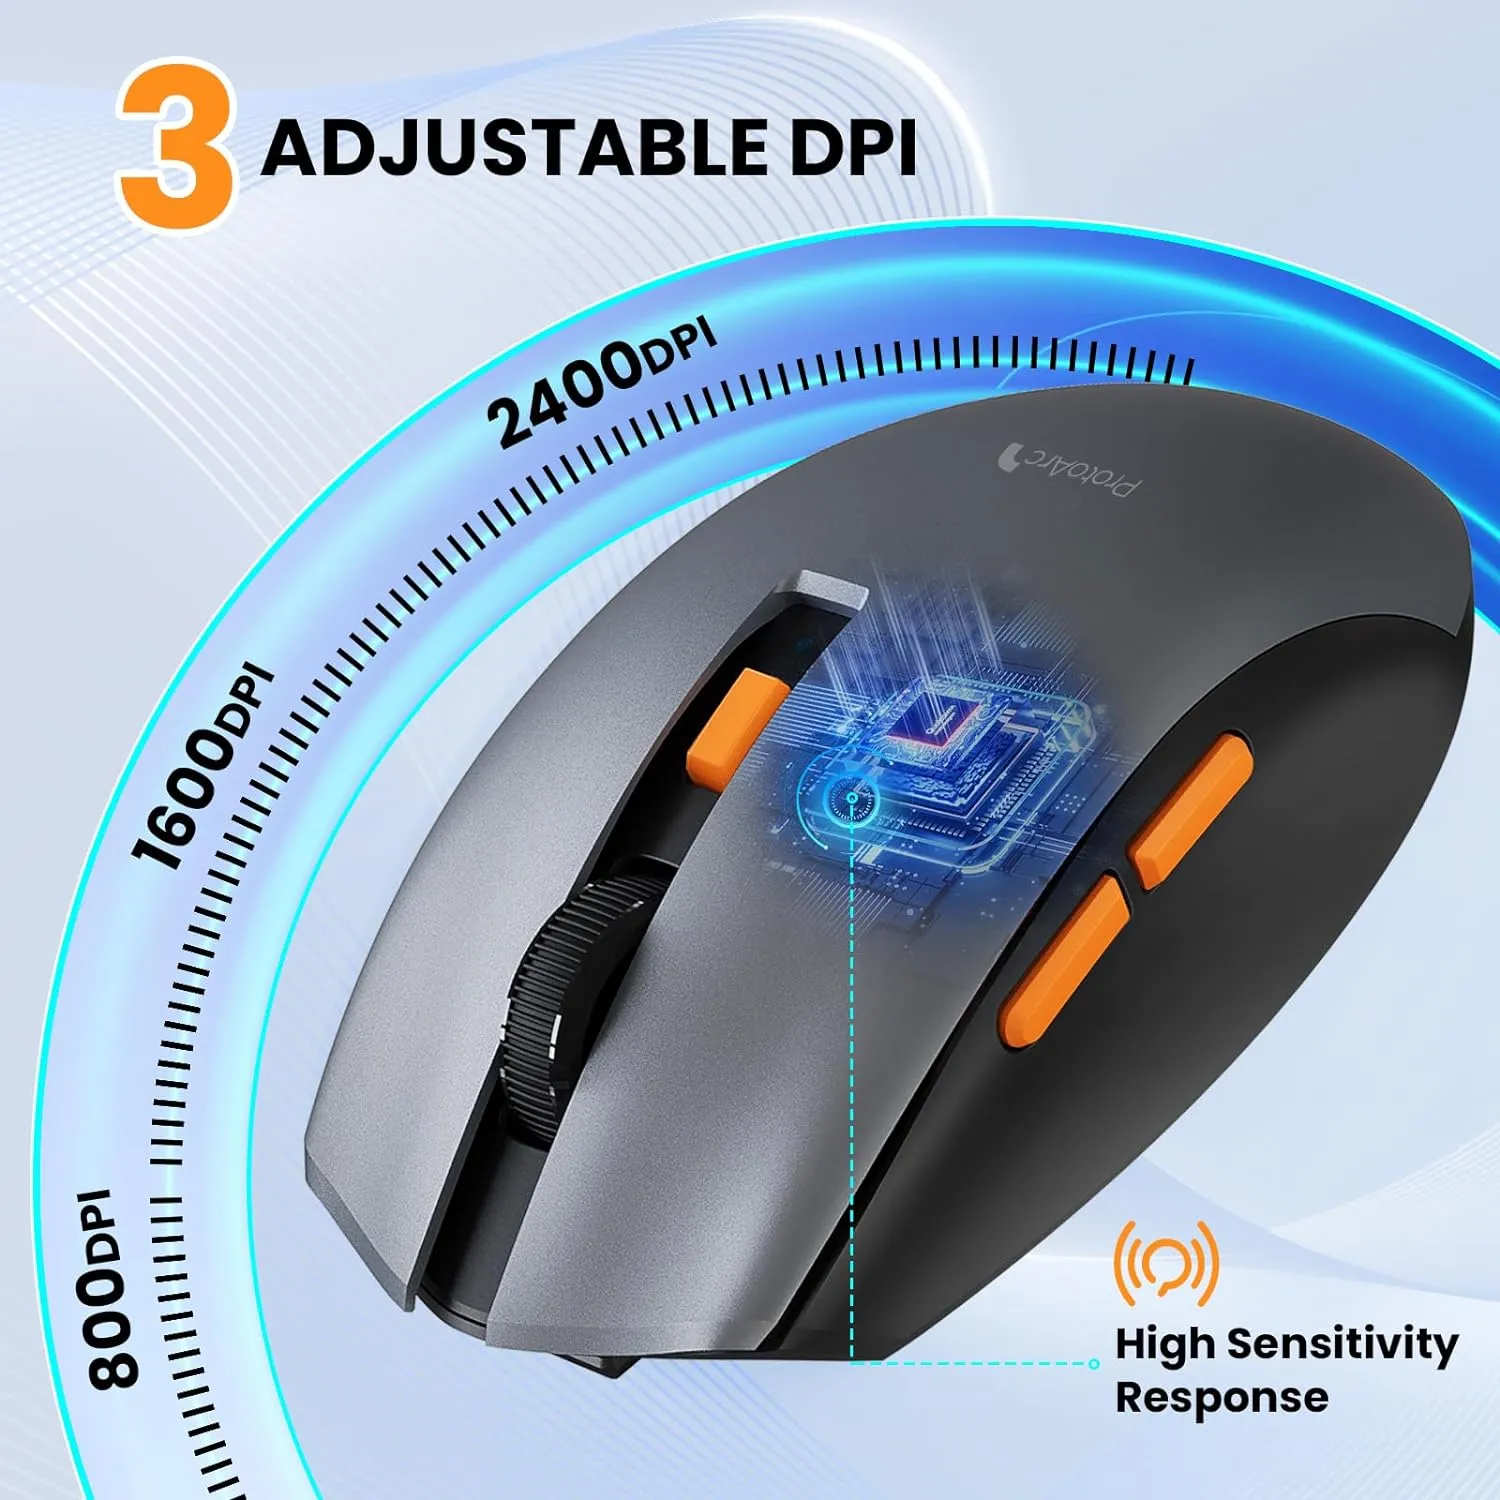 Mouse Inalámbrico Bluetooth, 1.94 Oz, Mouse Inalámbrico ligero, 2.4G, Silencioso Y Recargable , 3 Modos Dpi Ajustables, Para Pc, Ipad,